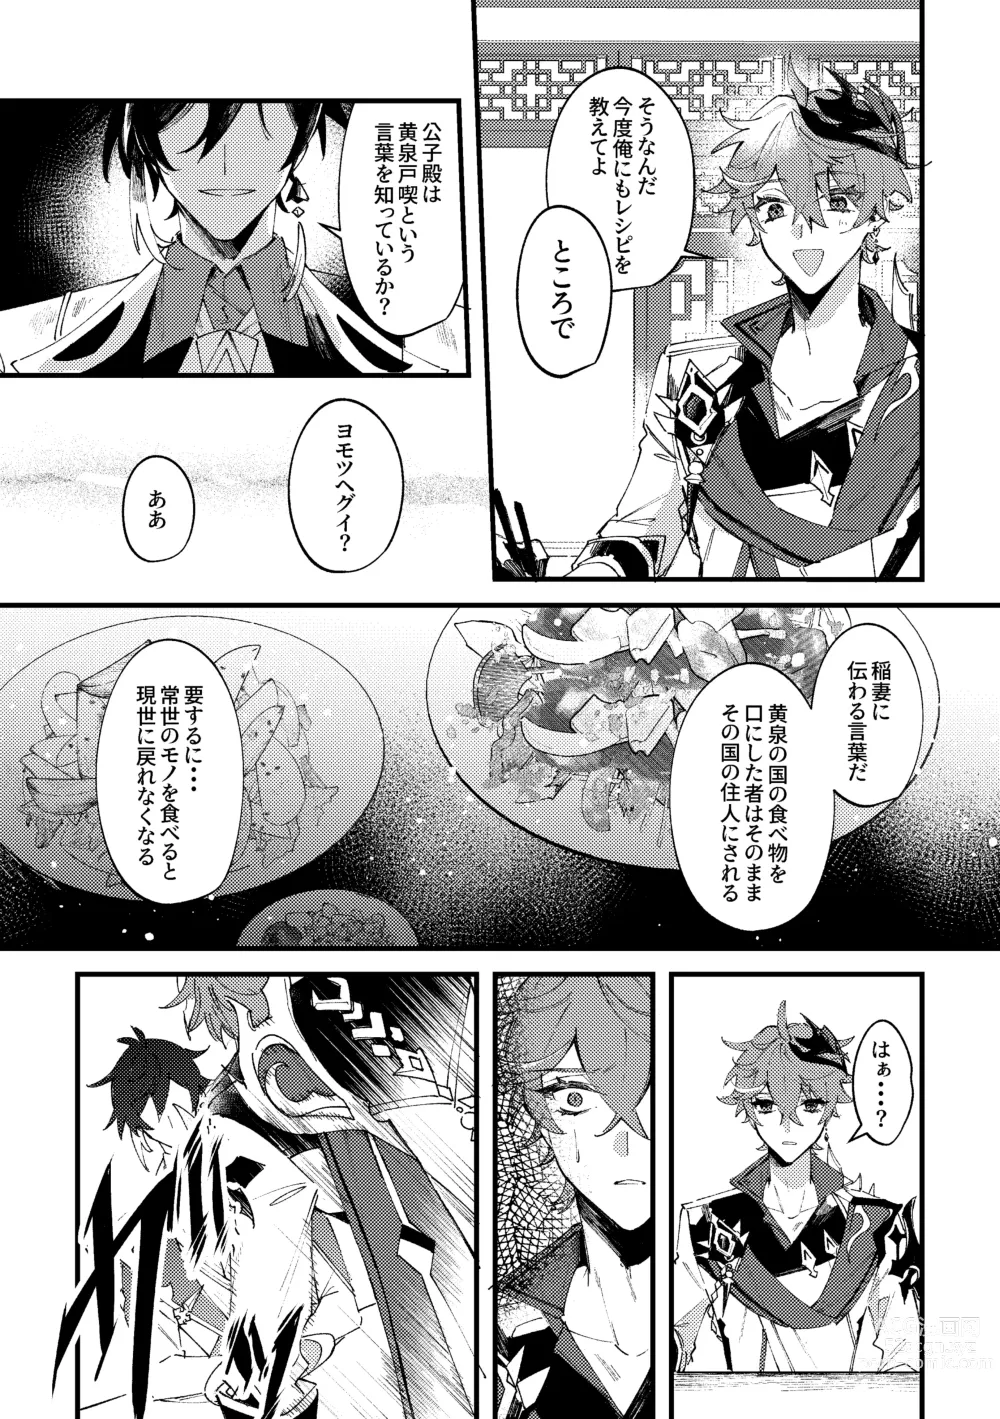 Page 7 of doujinshi Kiseki